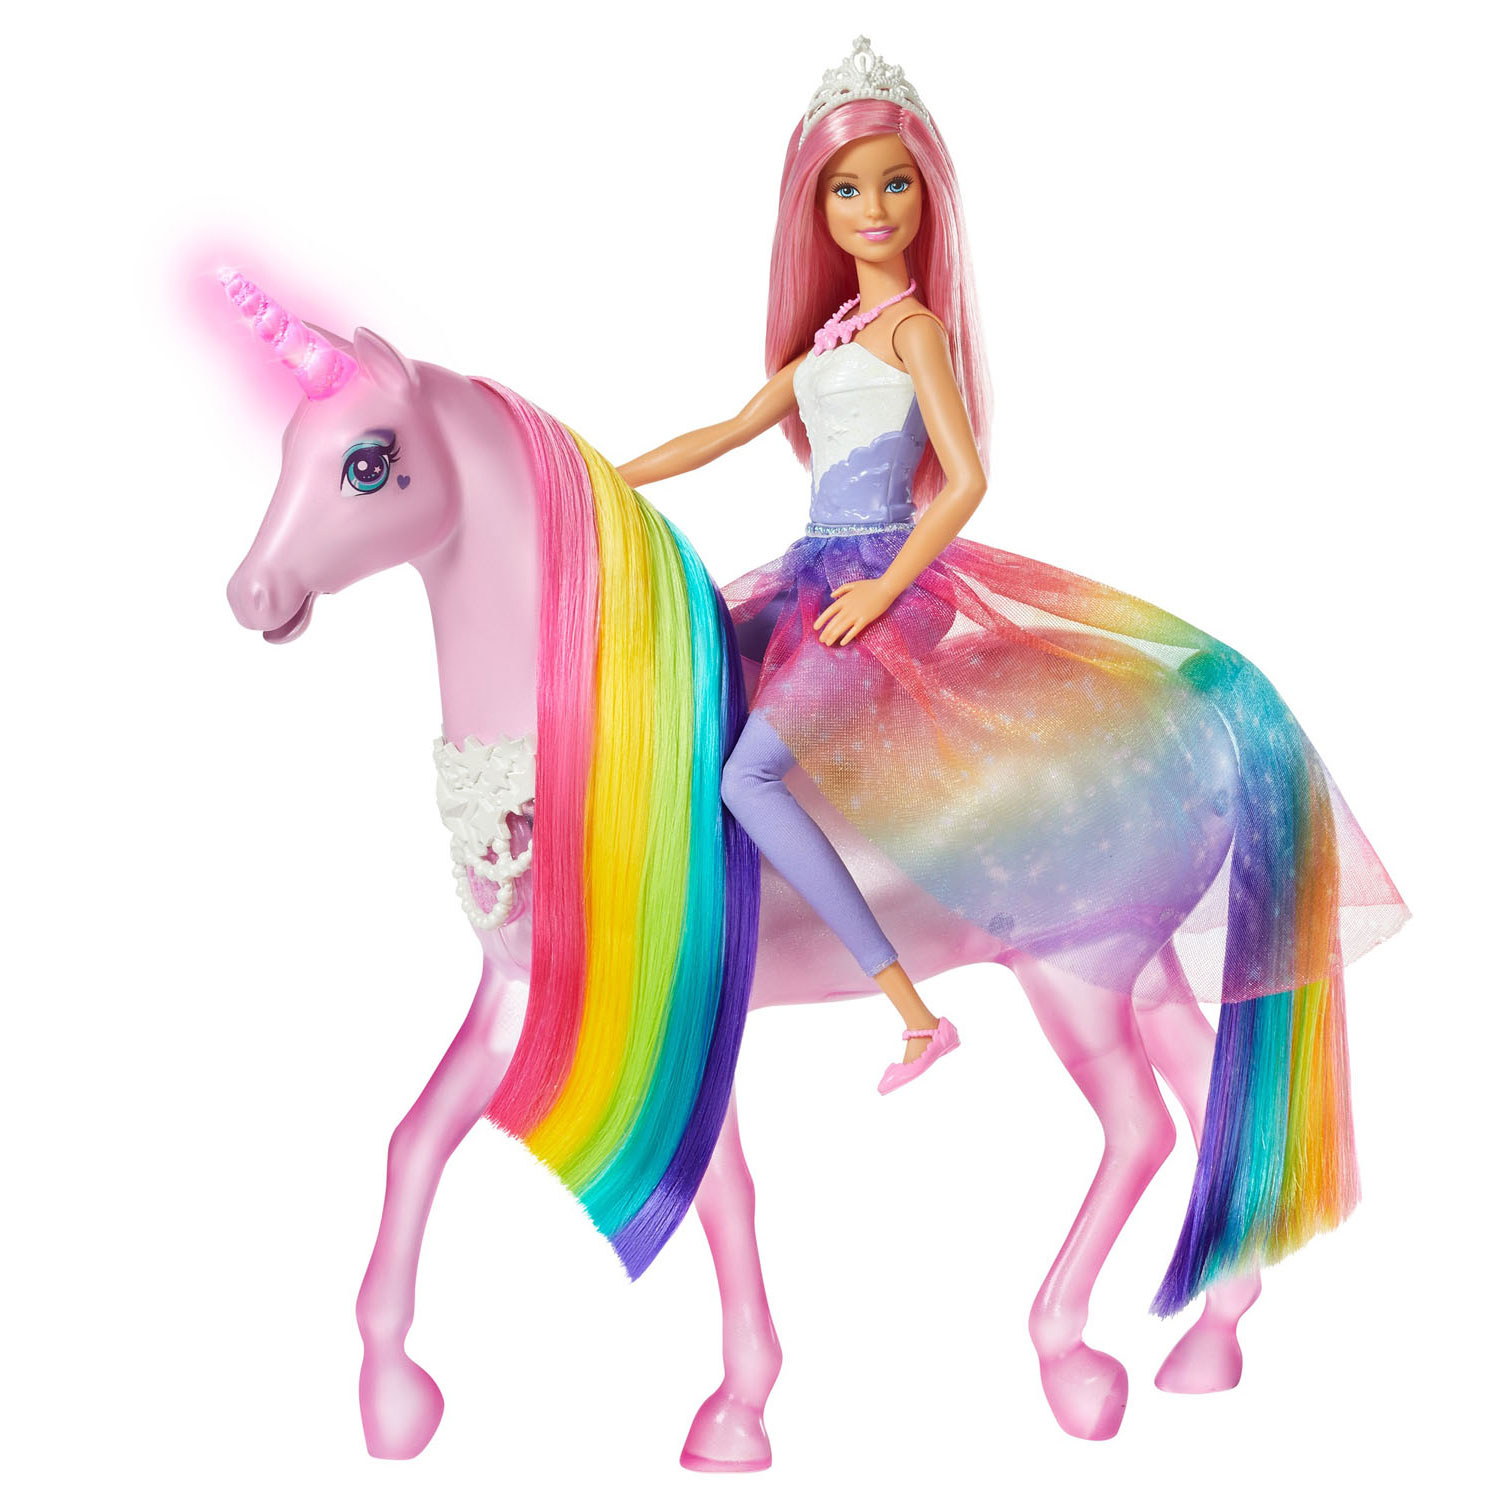 weekend Horizontaal In beweging Barbie Dreamtopia Eenhoorn met Pop online kopen | Lobbes Speelgoed